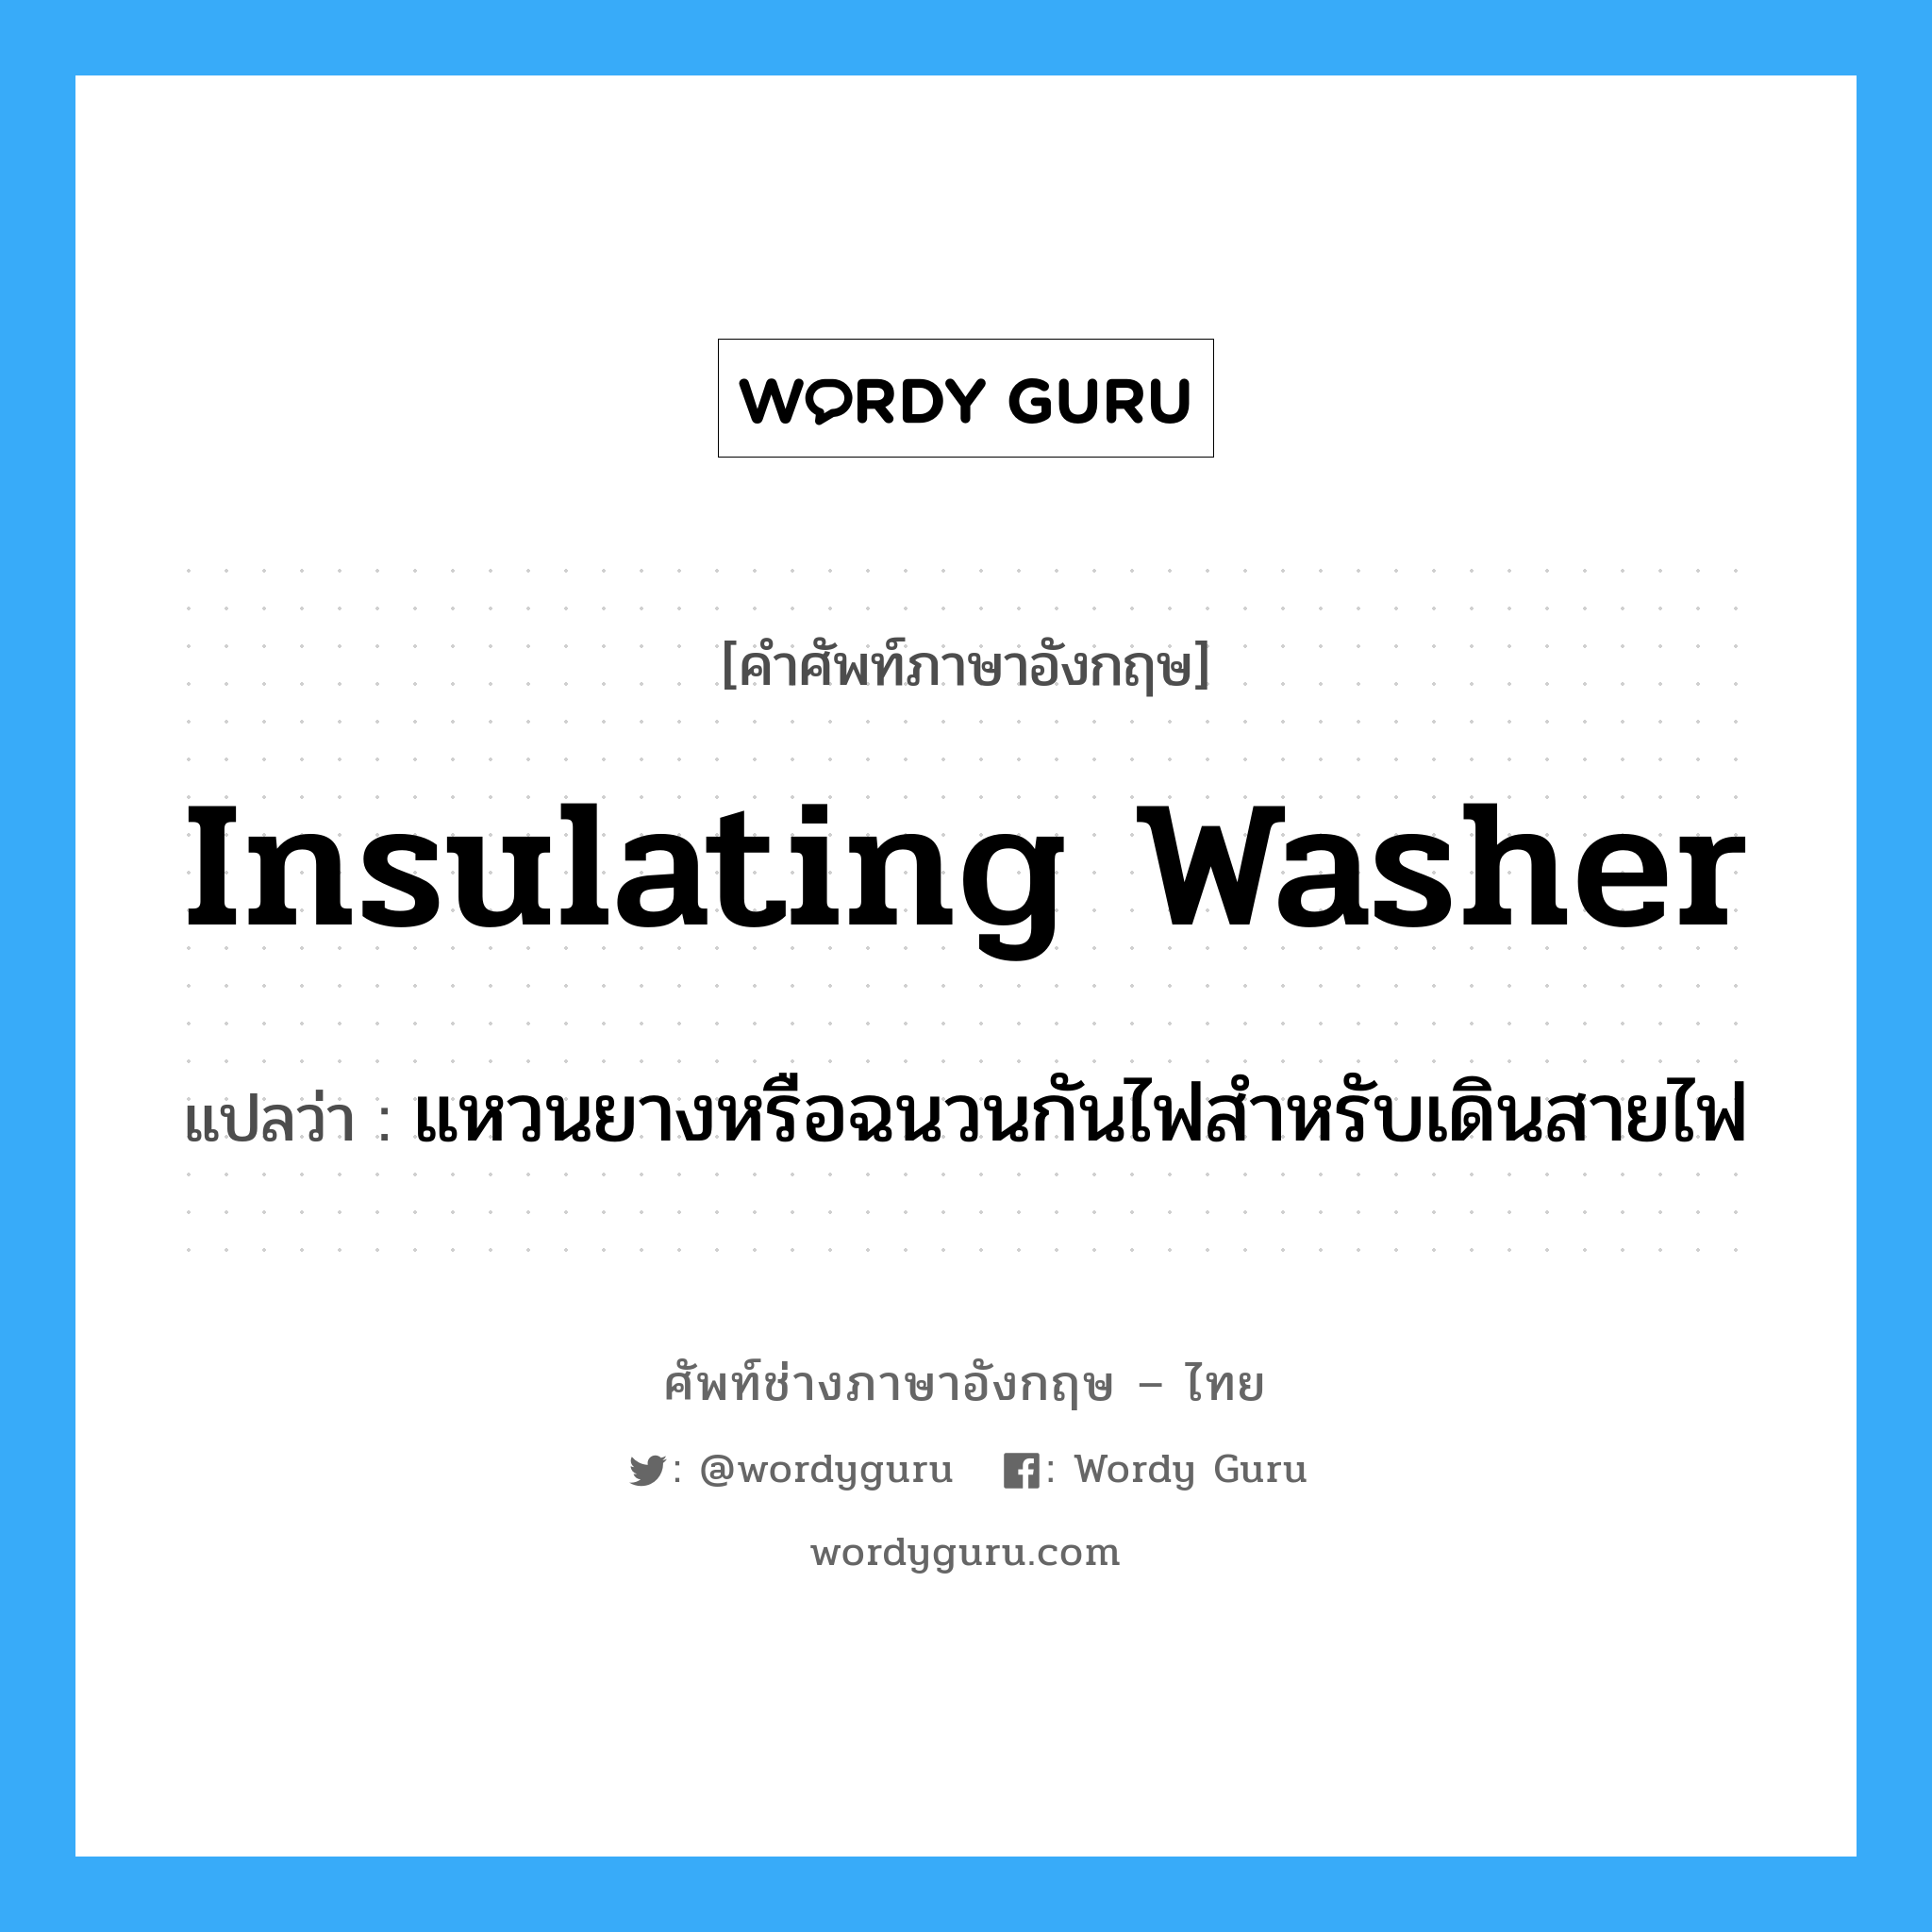 insulating washer แปลว่า?, คำศัพท์ช่างภาษาอังกฤษ - ไทย insulating washer คำศัพท์ภาษาอังกฤษ insulating washer แปลว่า แหวนยางหรือฉนวนกันไฟสำหรับเดินสายไฟ